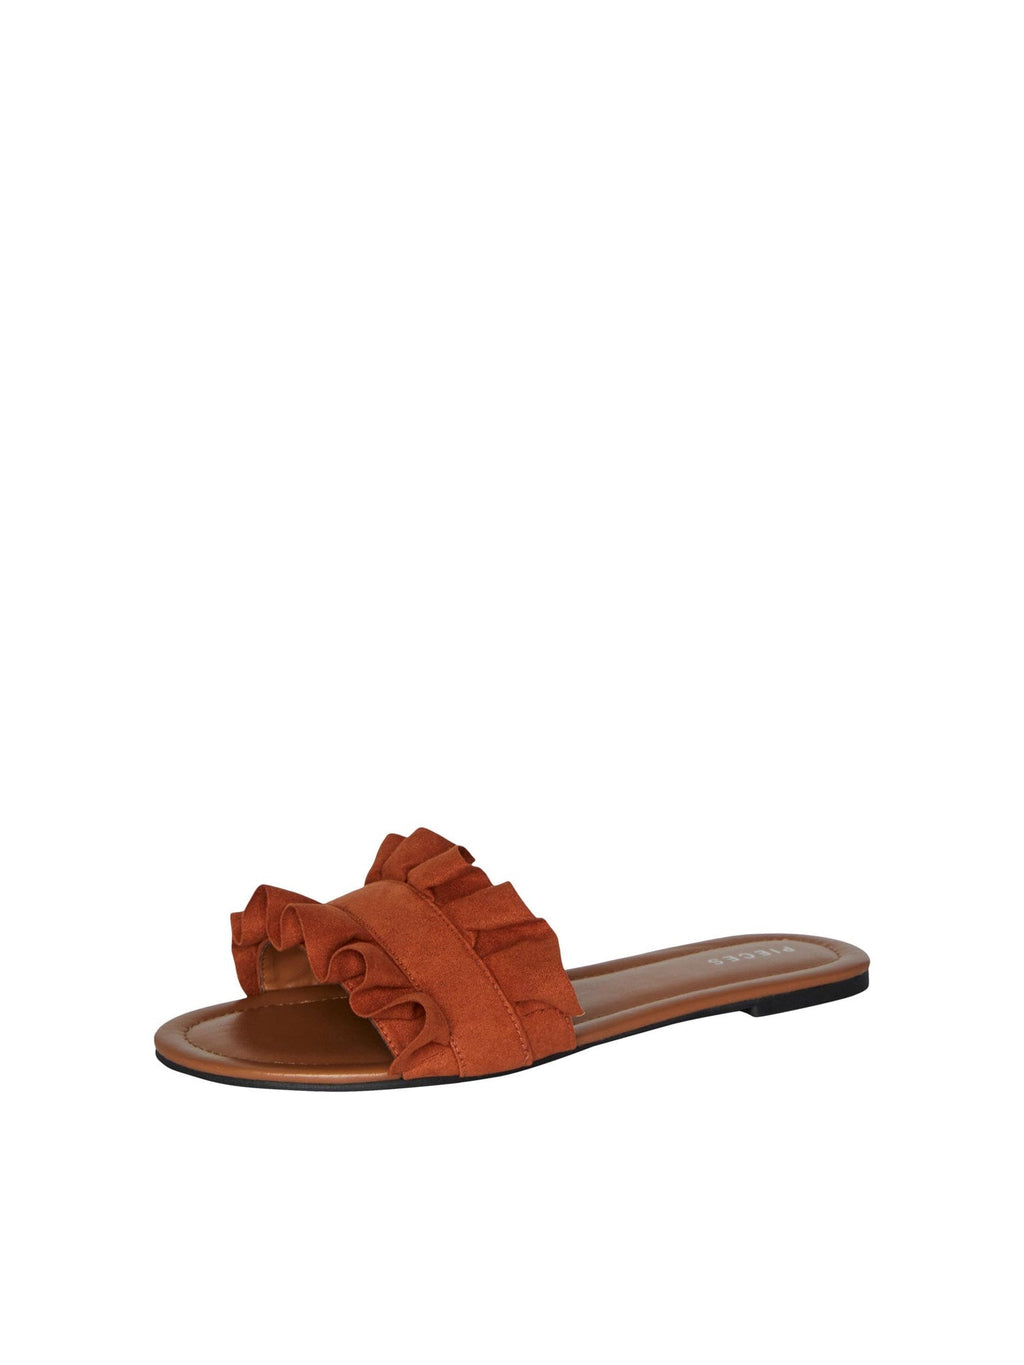 Nola sandalera - Kokosova školjka